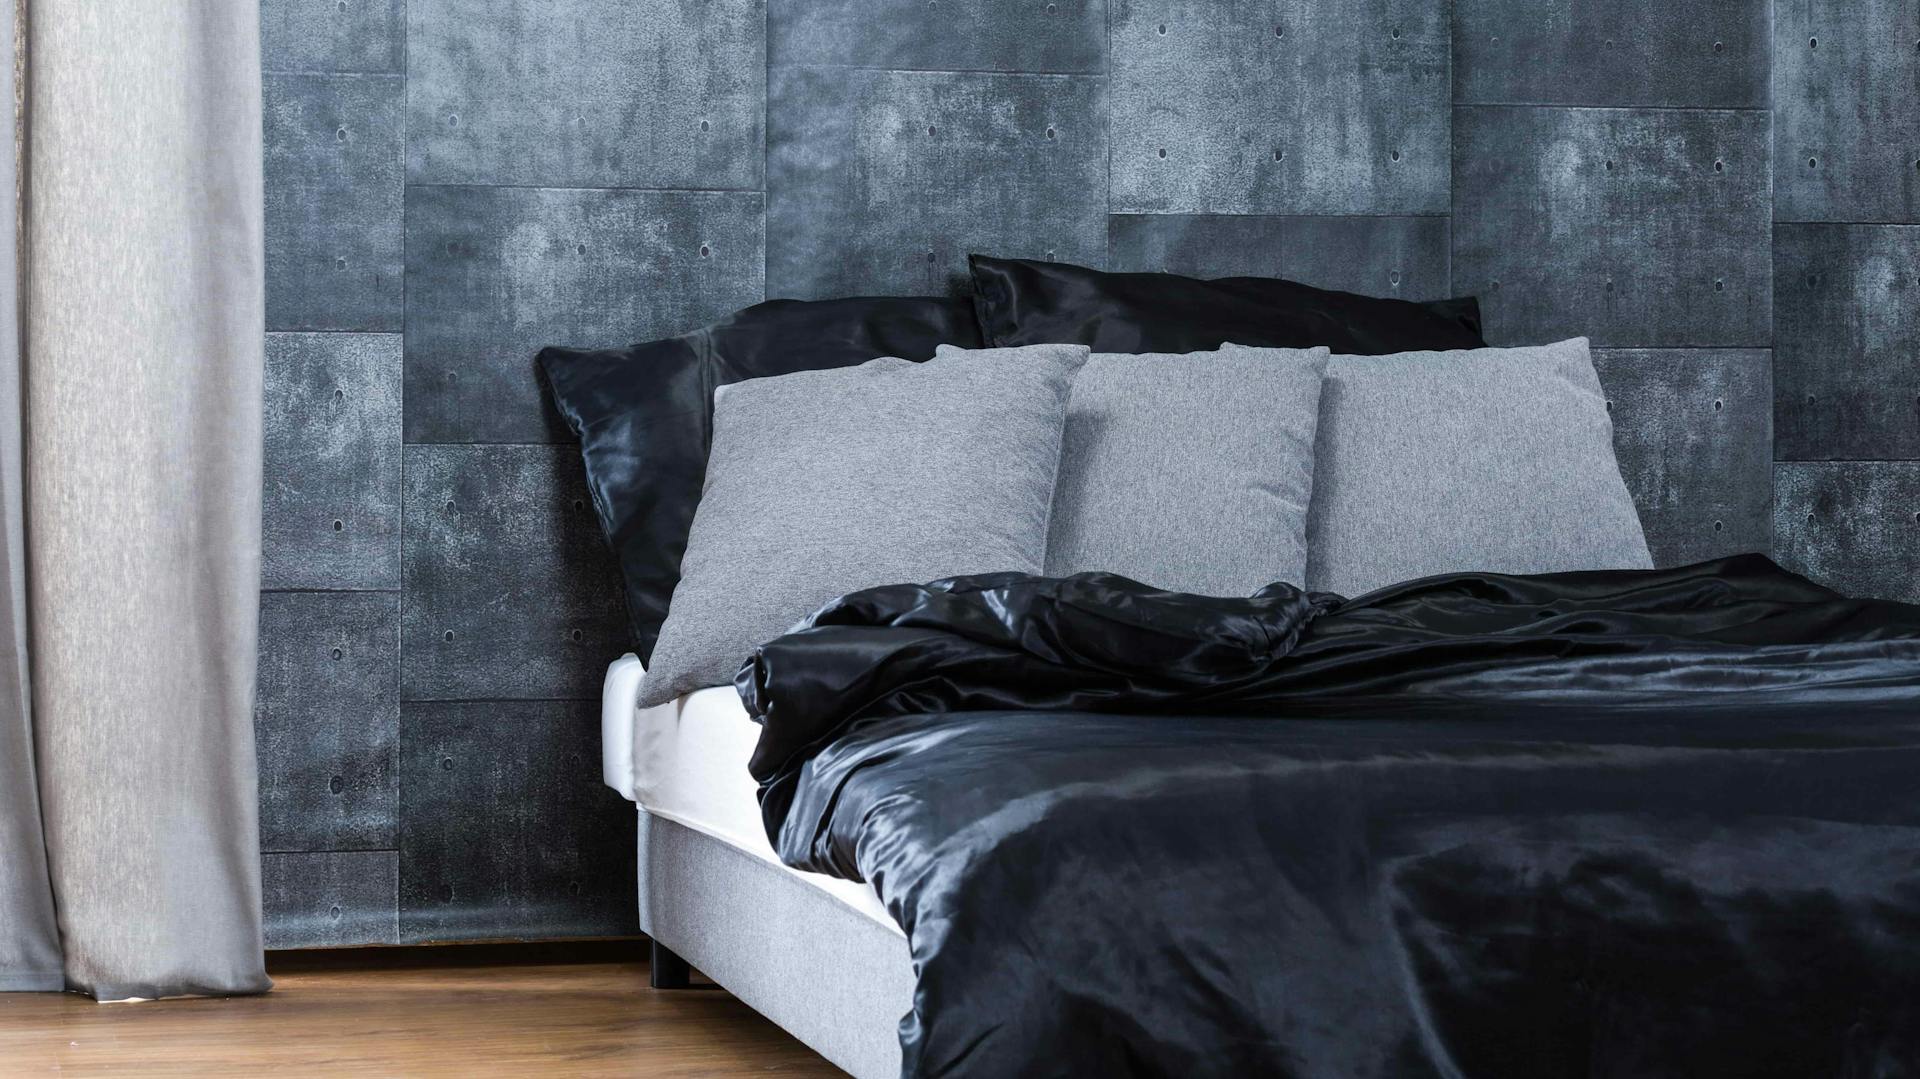 Ein Bett steht vor einer grauen Mustertapete